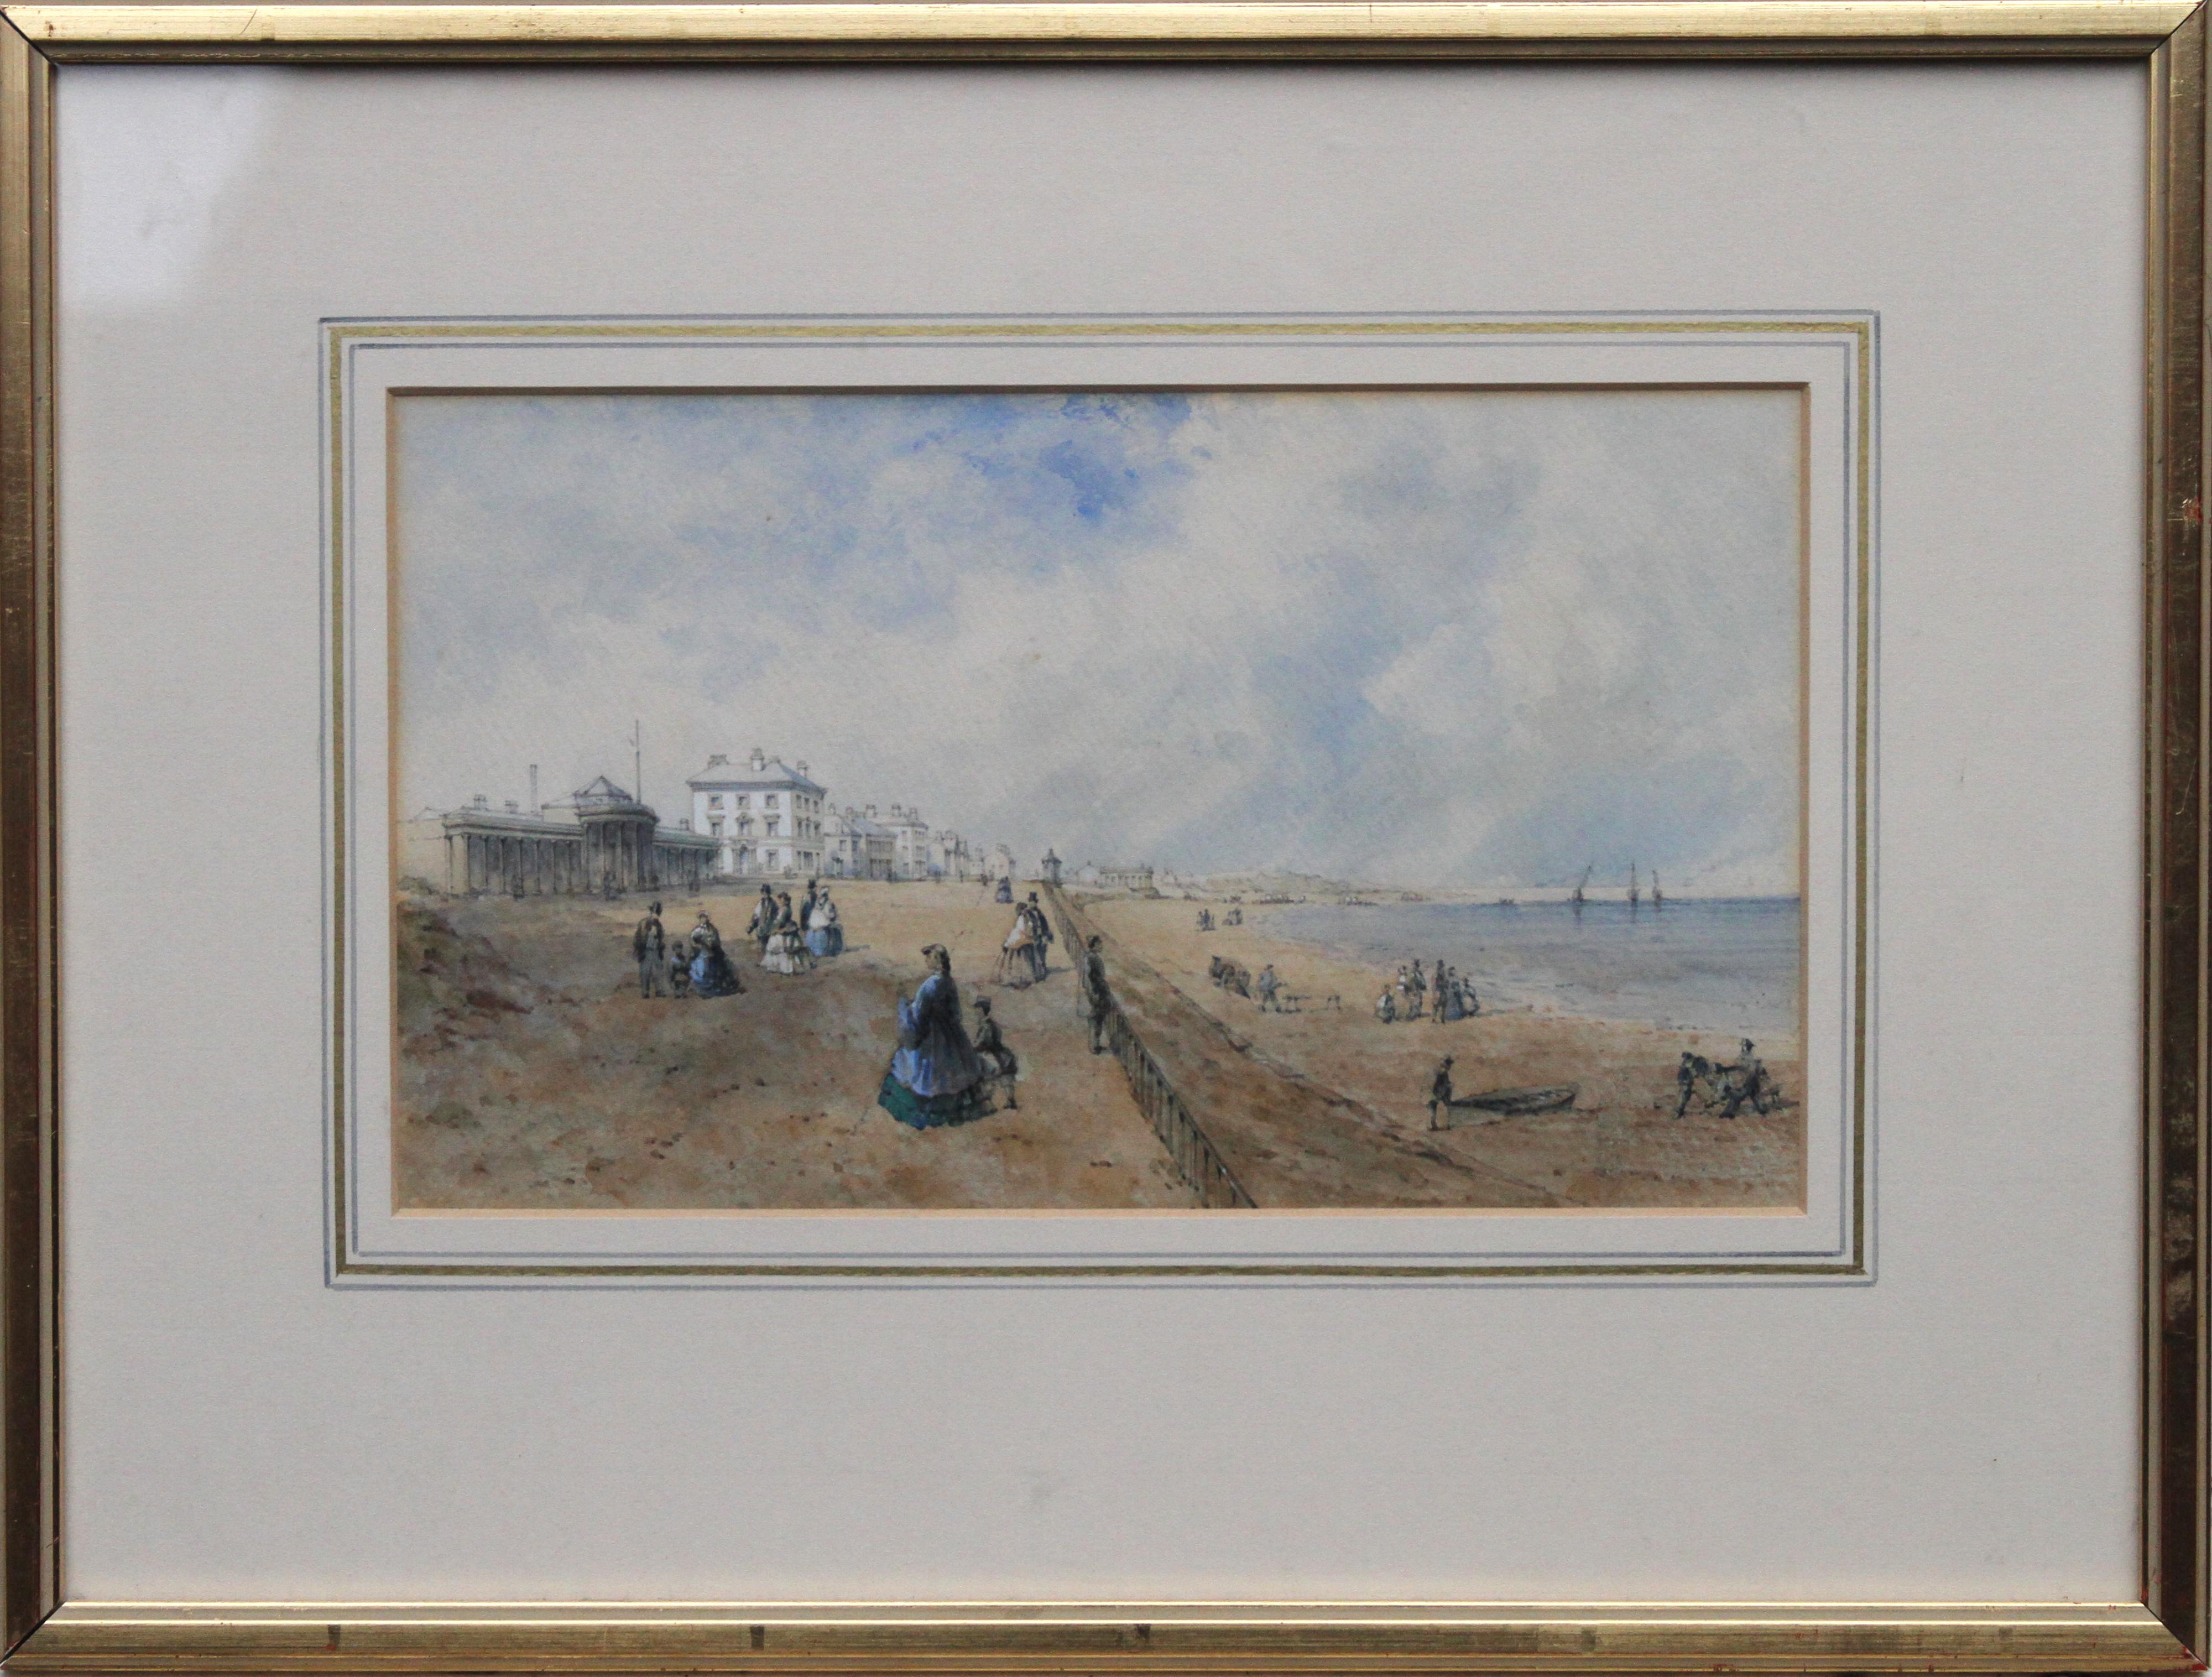 Promenade in Southport – britisches Aquarell von Küstenlandschaften aus dem 19. Jahrhundert